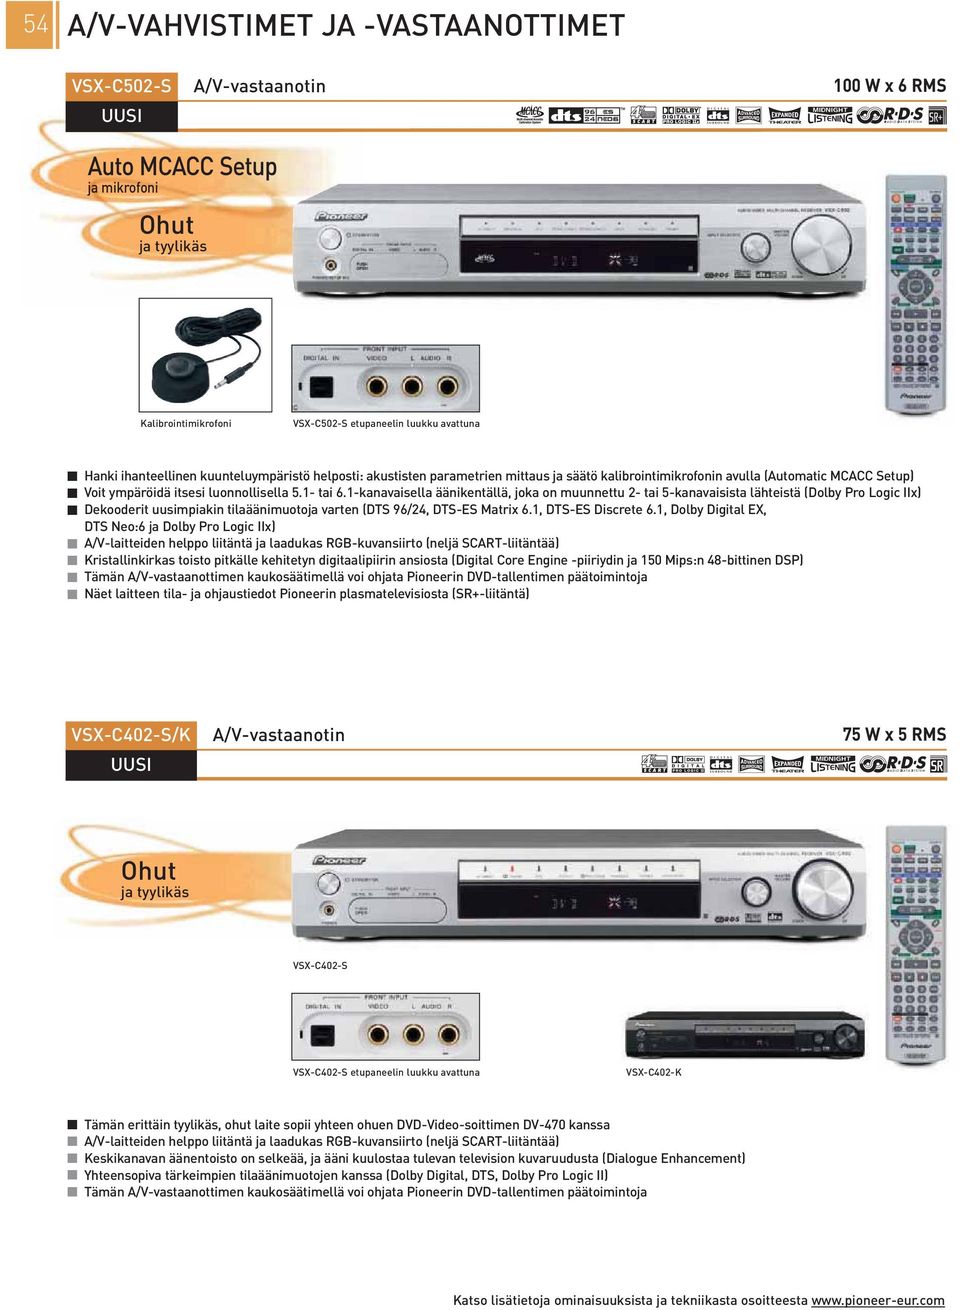 -kanavaisella äänikentällä, joka on muunnettu - tai 5-kanavaisista lähteistä (Dolby Pro Logic IIx) Dekooderit uusimpiakin tilaäänimuotoja varten (DTS 96/4, DTS-ES Matrix 6., DTS-ES Discrete 6.